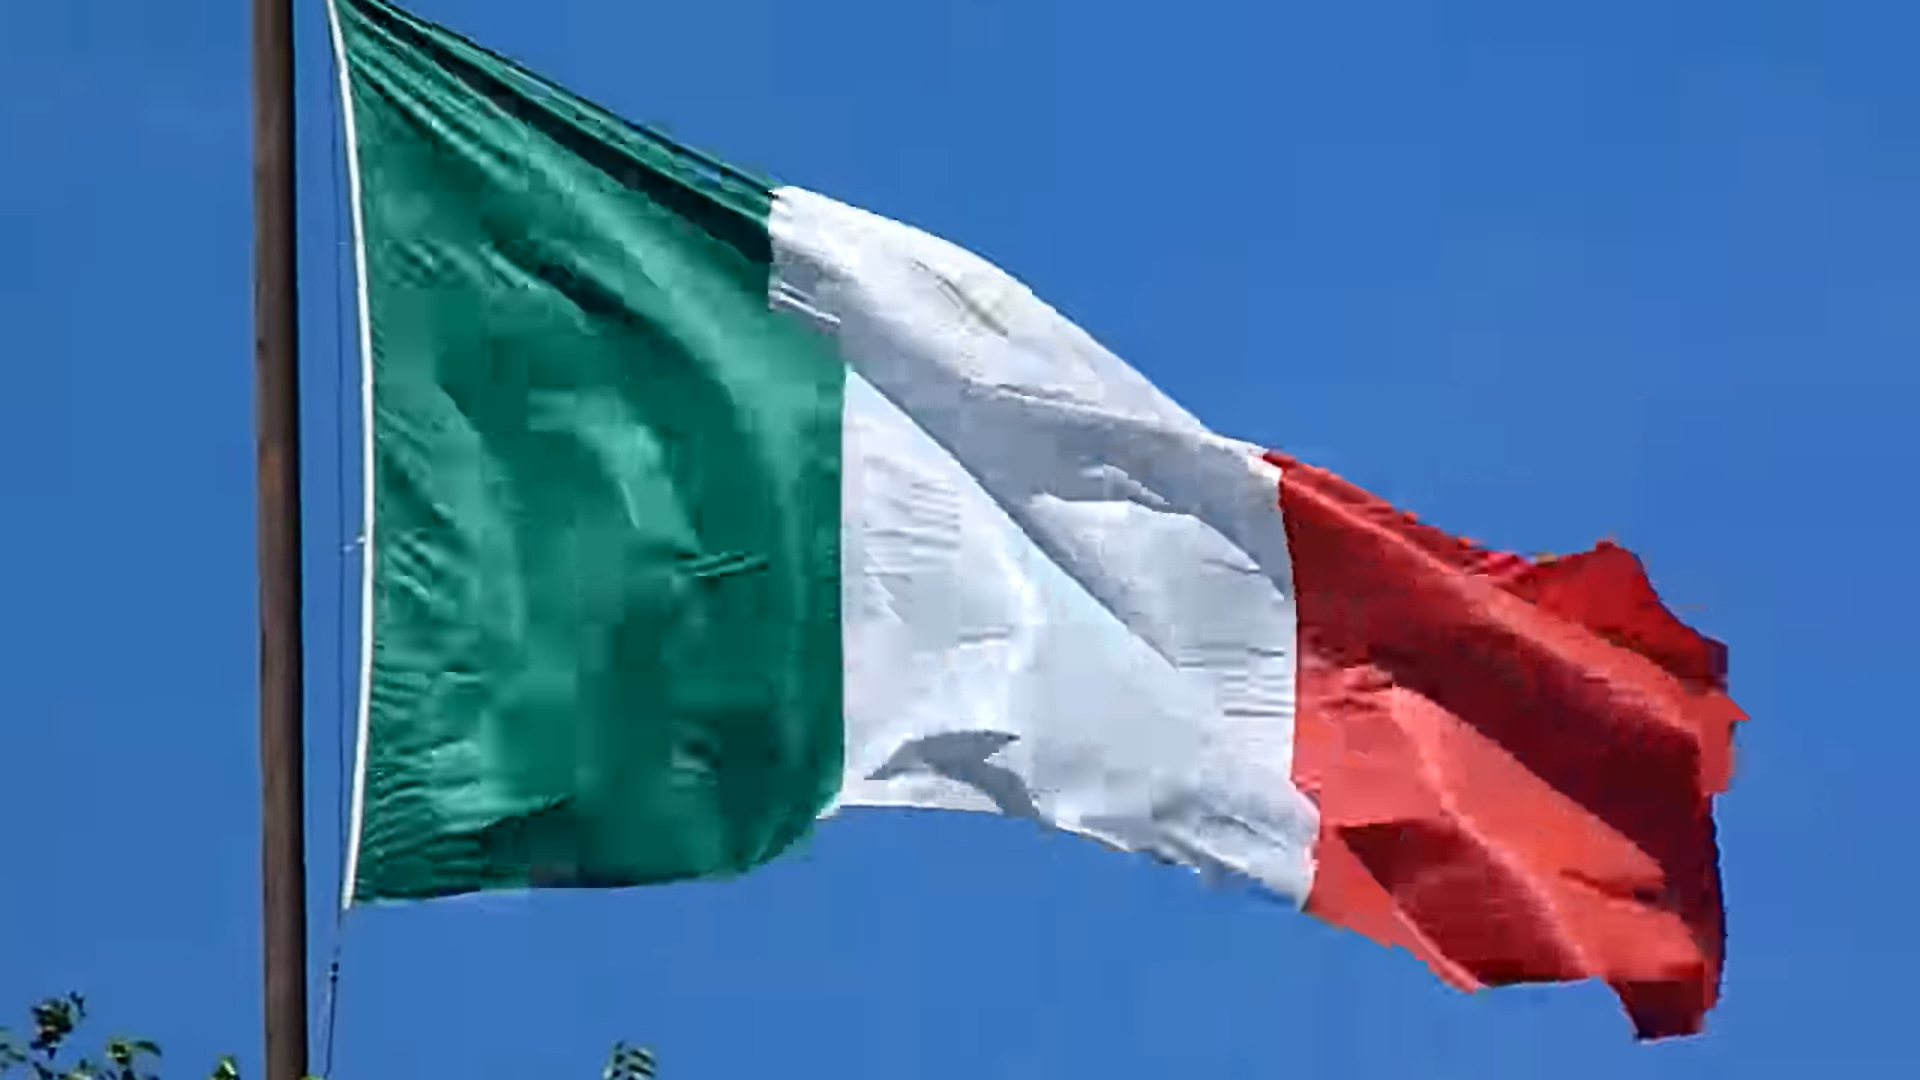 Италия призывает НАТО ставить более приемлемые цели на военные расходы